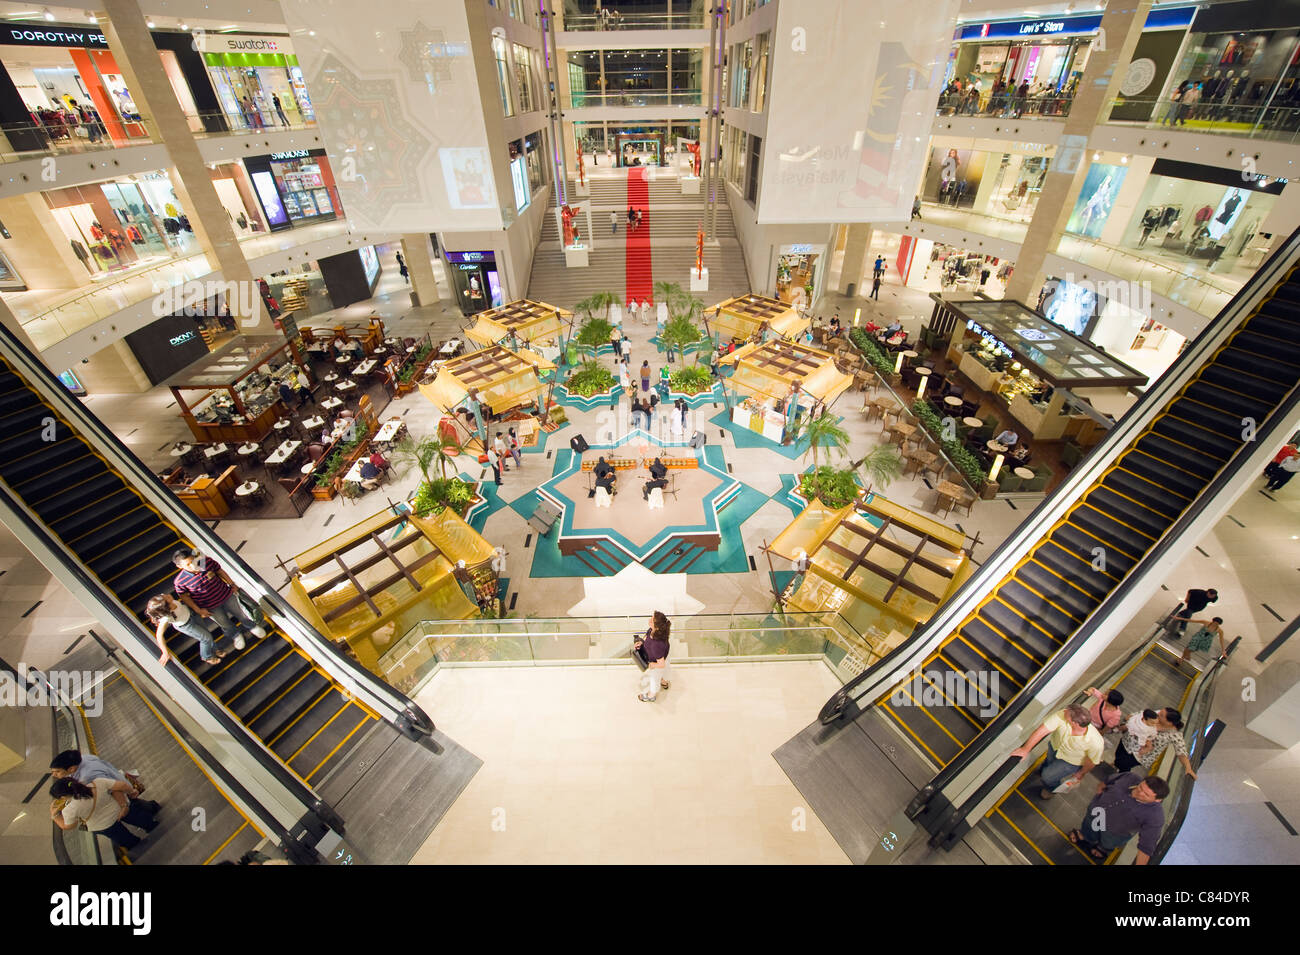 Pavillion shopping mall, Bukit Bintang, Kuala Lumpur, Malaysia, South East Asia Stock Photo